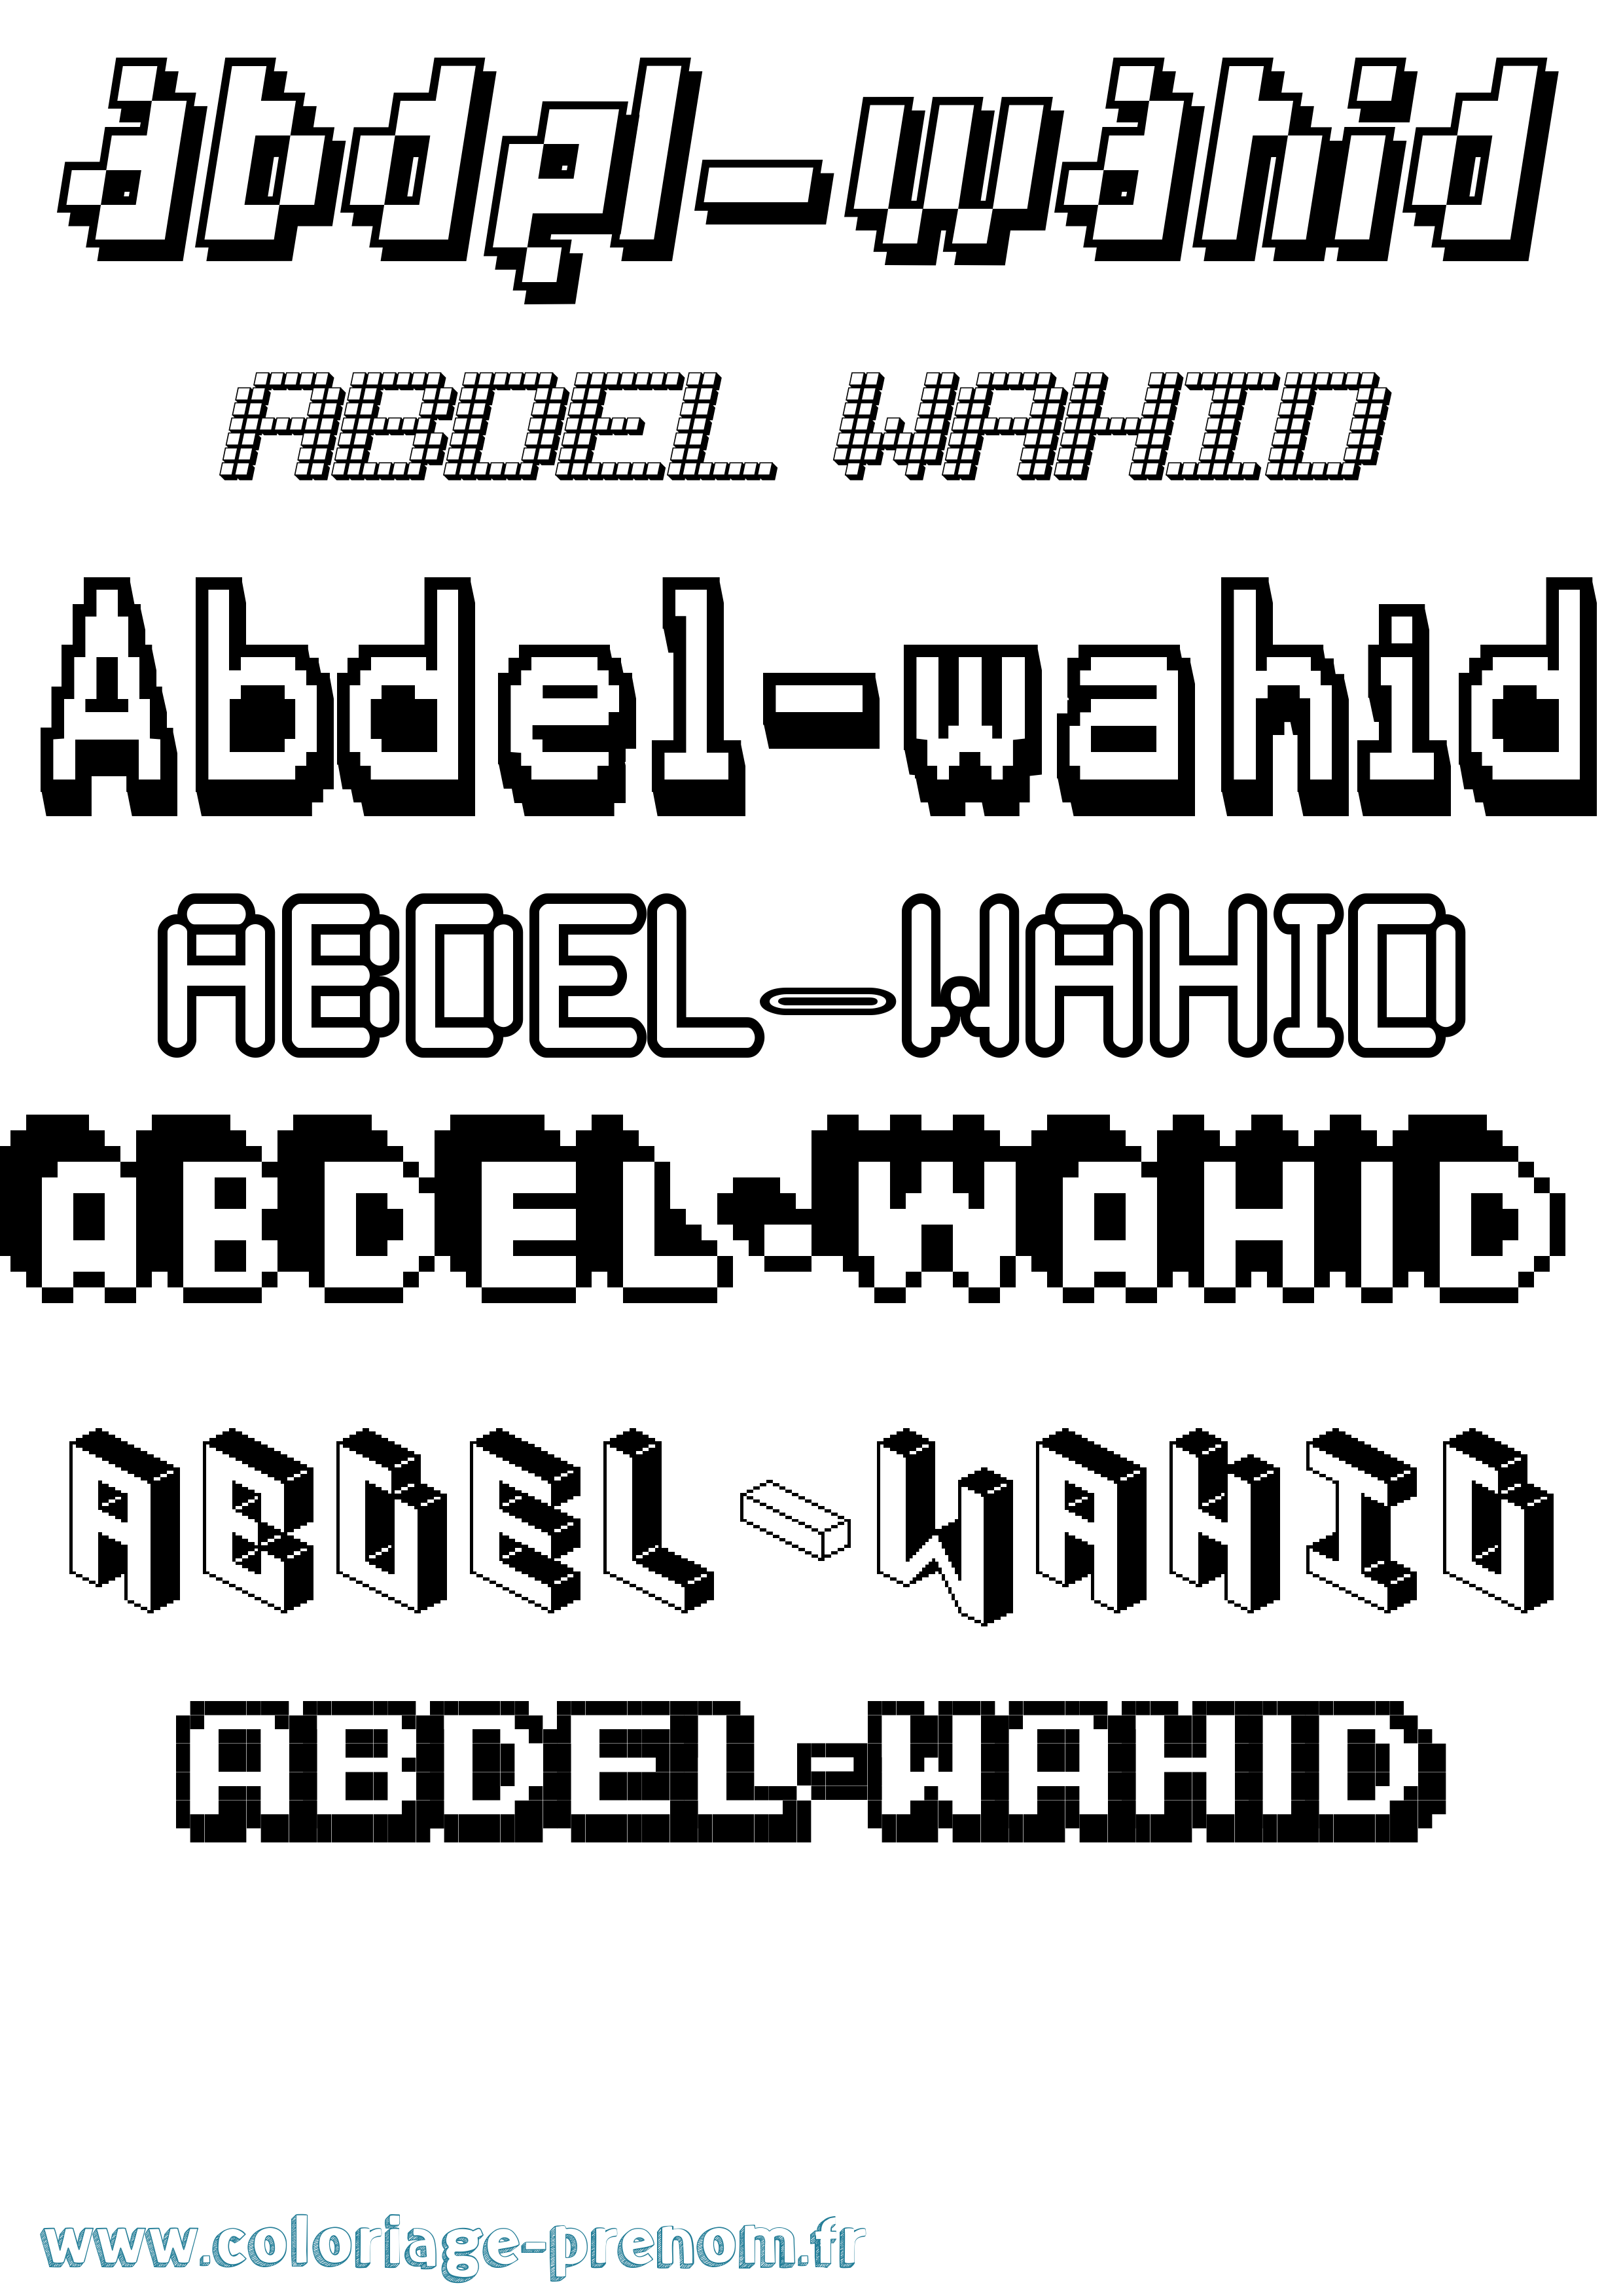 Coloriage prénom Abdel-Wahid Pixel